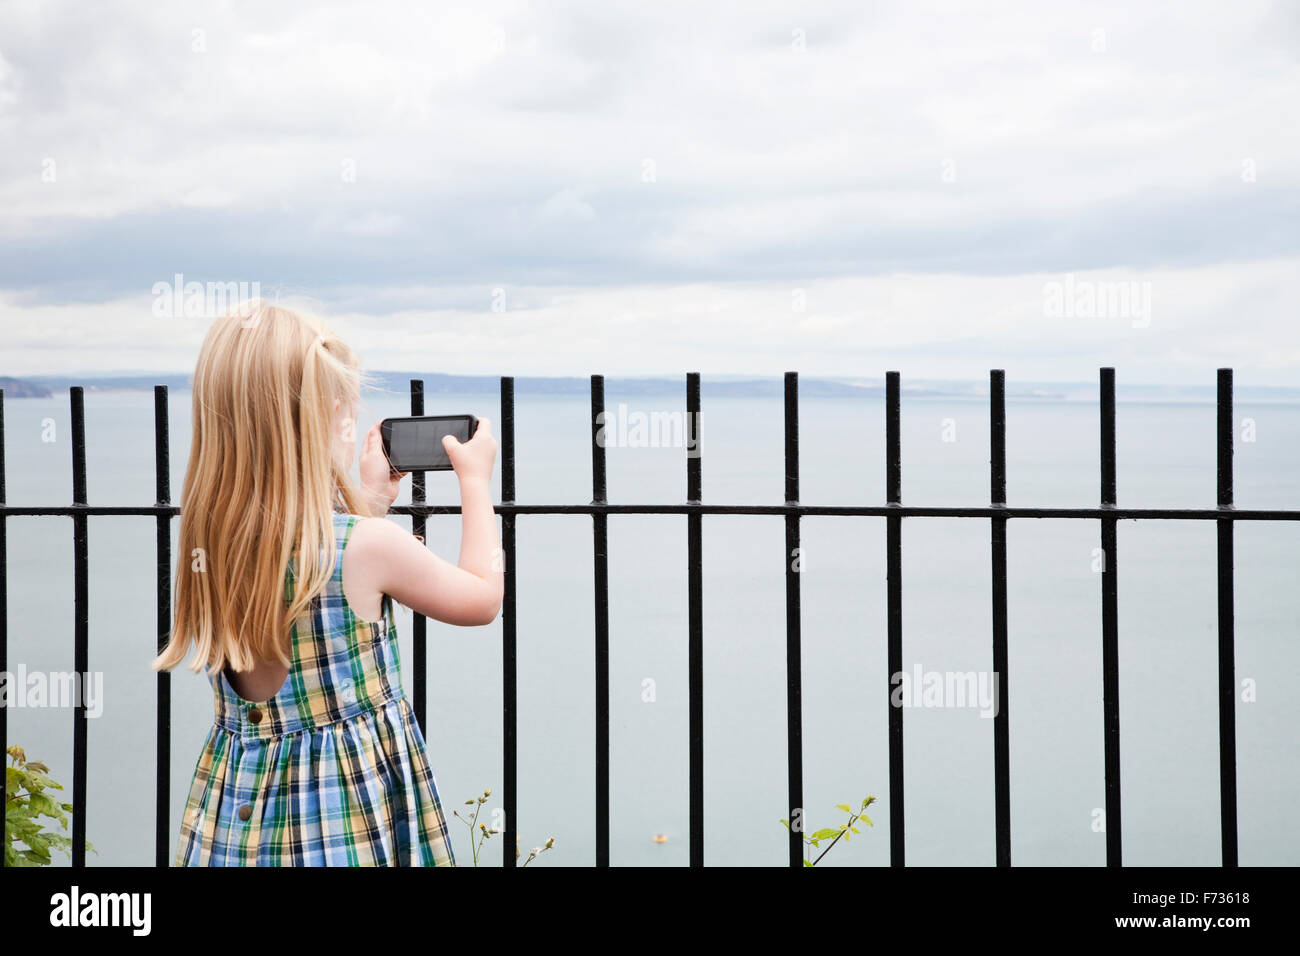 Ein Mädchen in einem aufgegebenen Sommerkleid mit dem Fotografieren mit einem Smartphone. Stockfoto